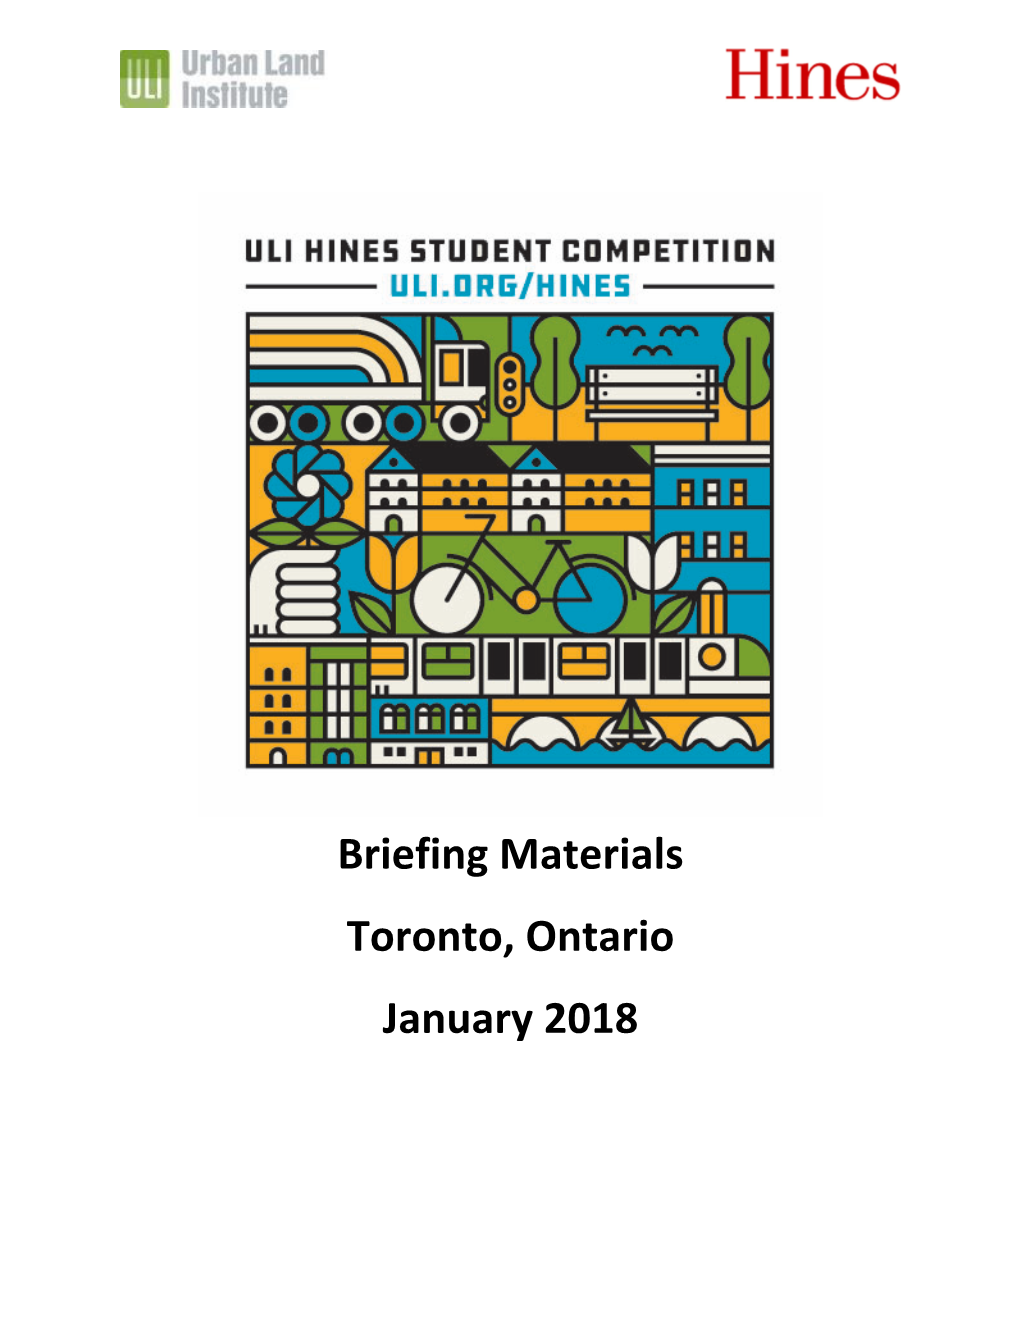 Briefing Materials Toronto, Ontario January 2018